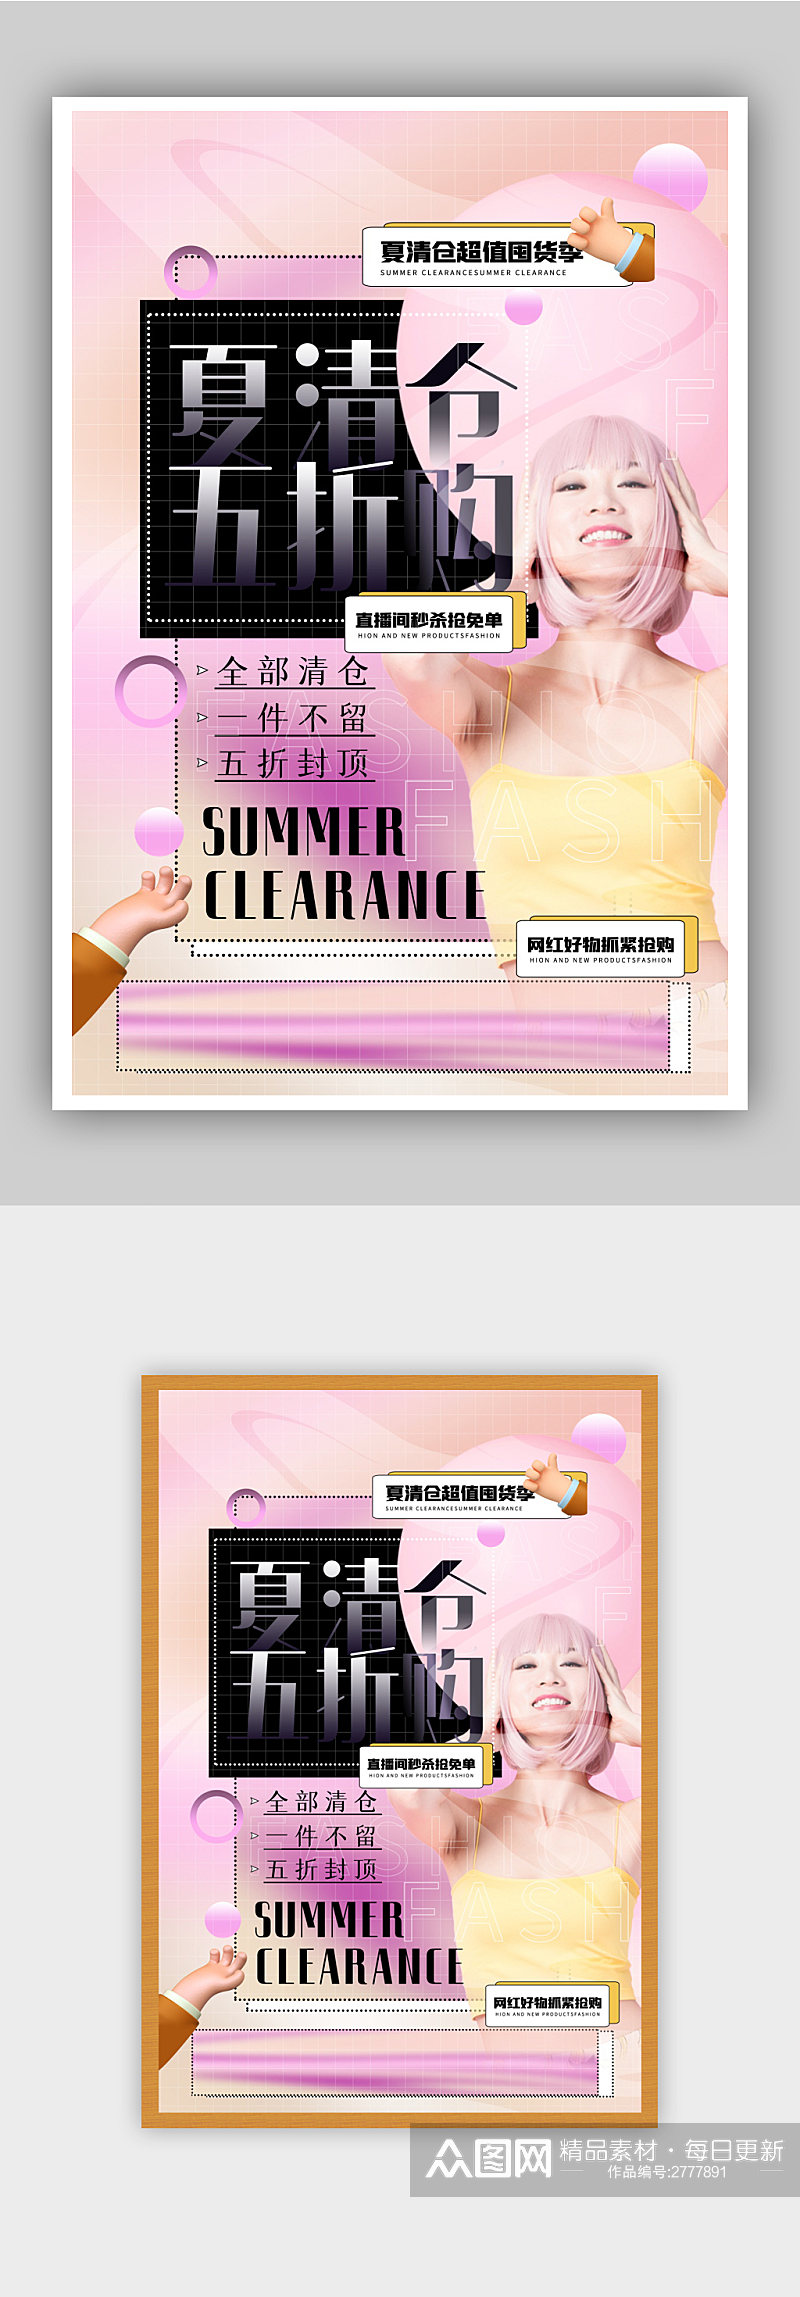 时尚粉色酸性风夏季清仓促销海报素材